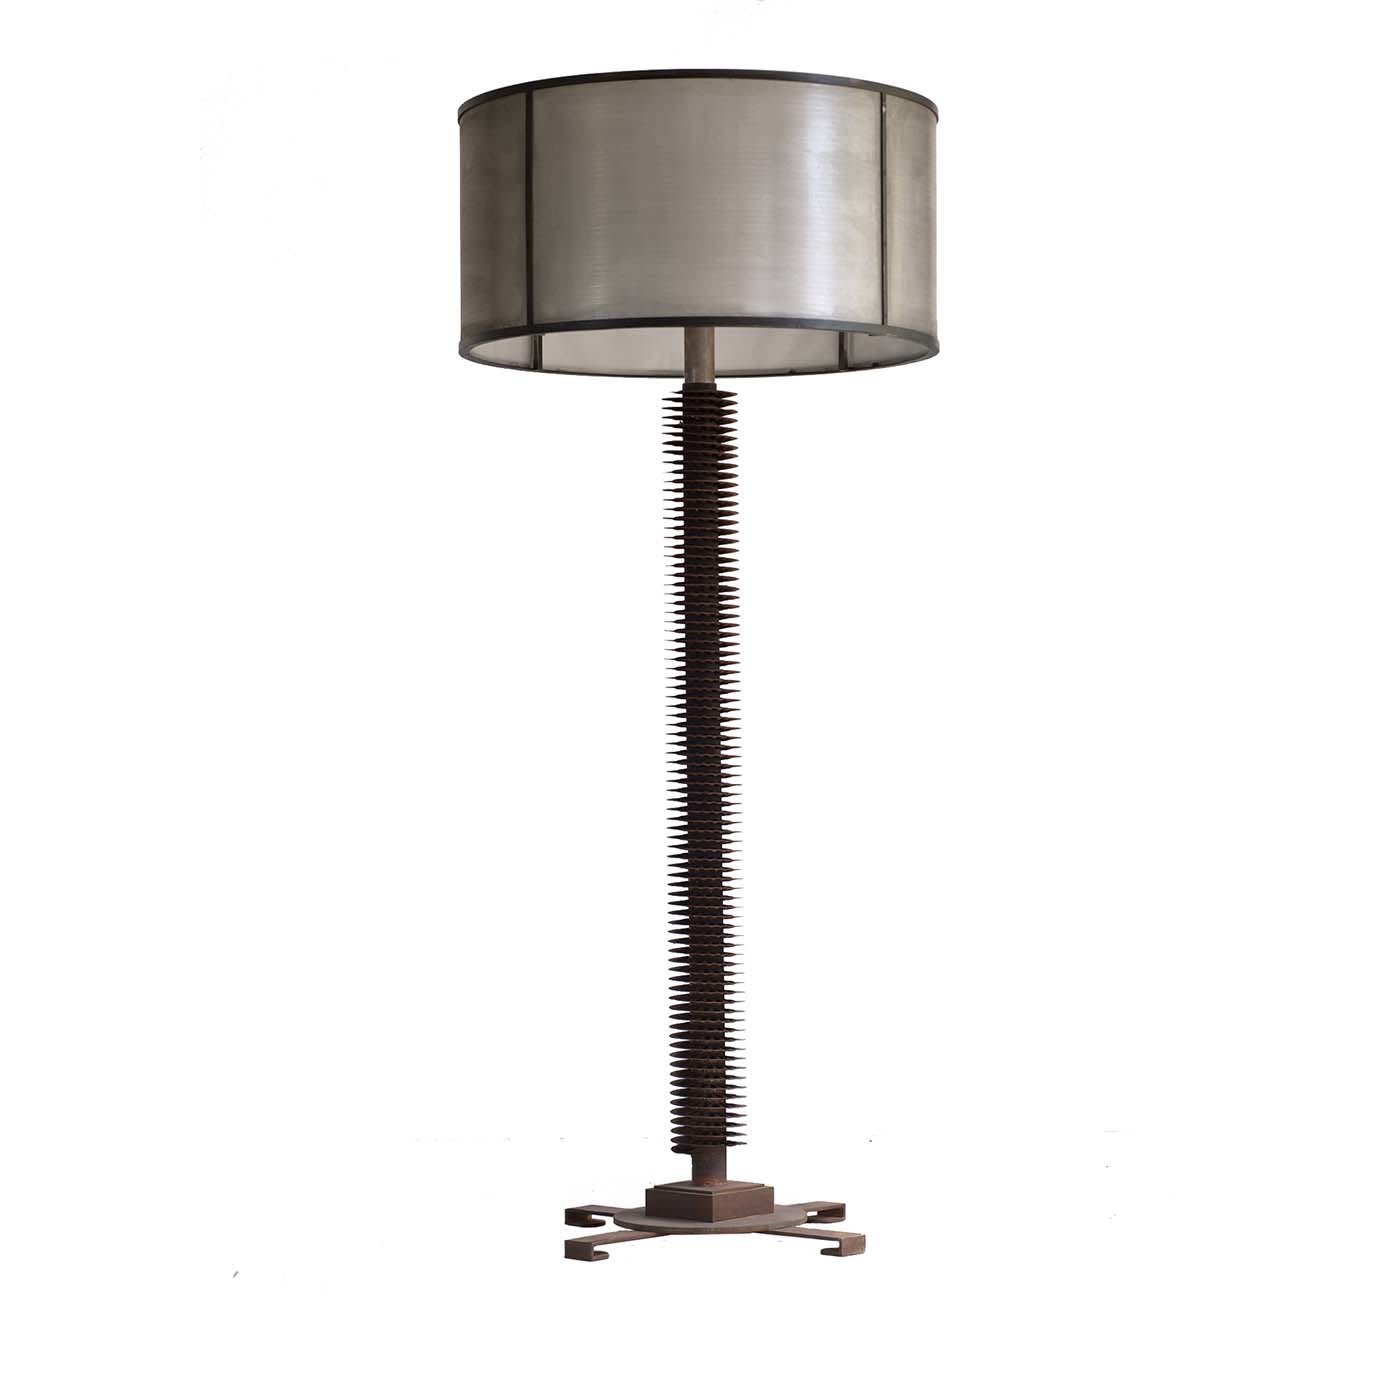 The Reclaimed Floor Lamp - B.B. for Reschio